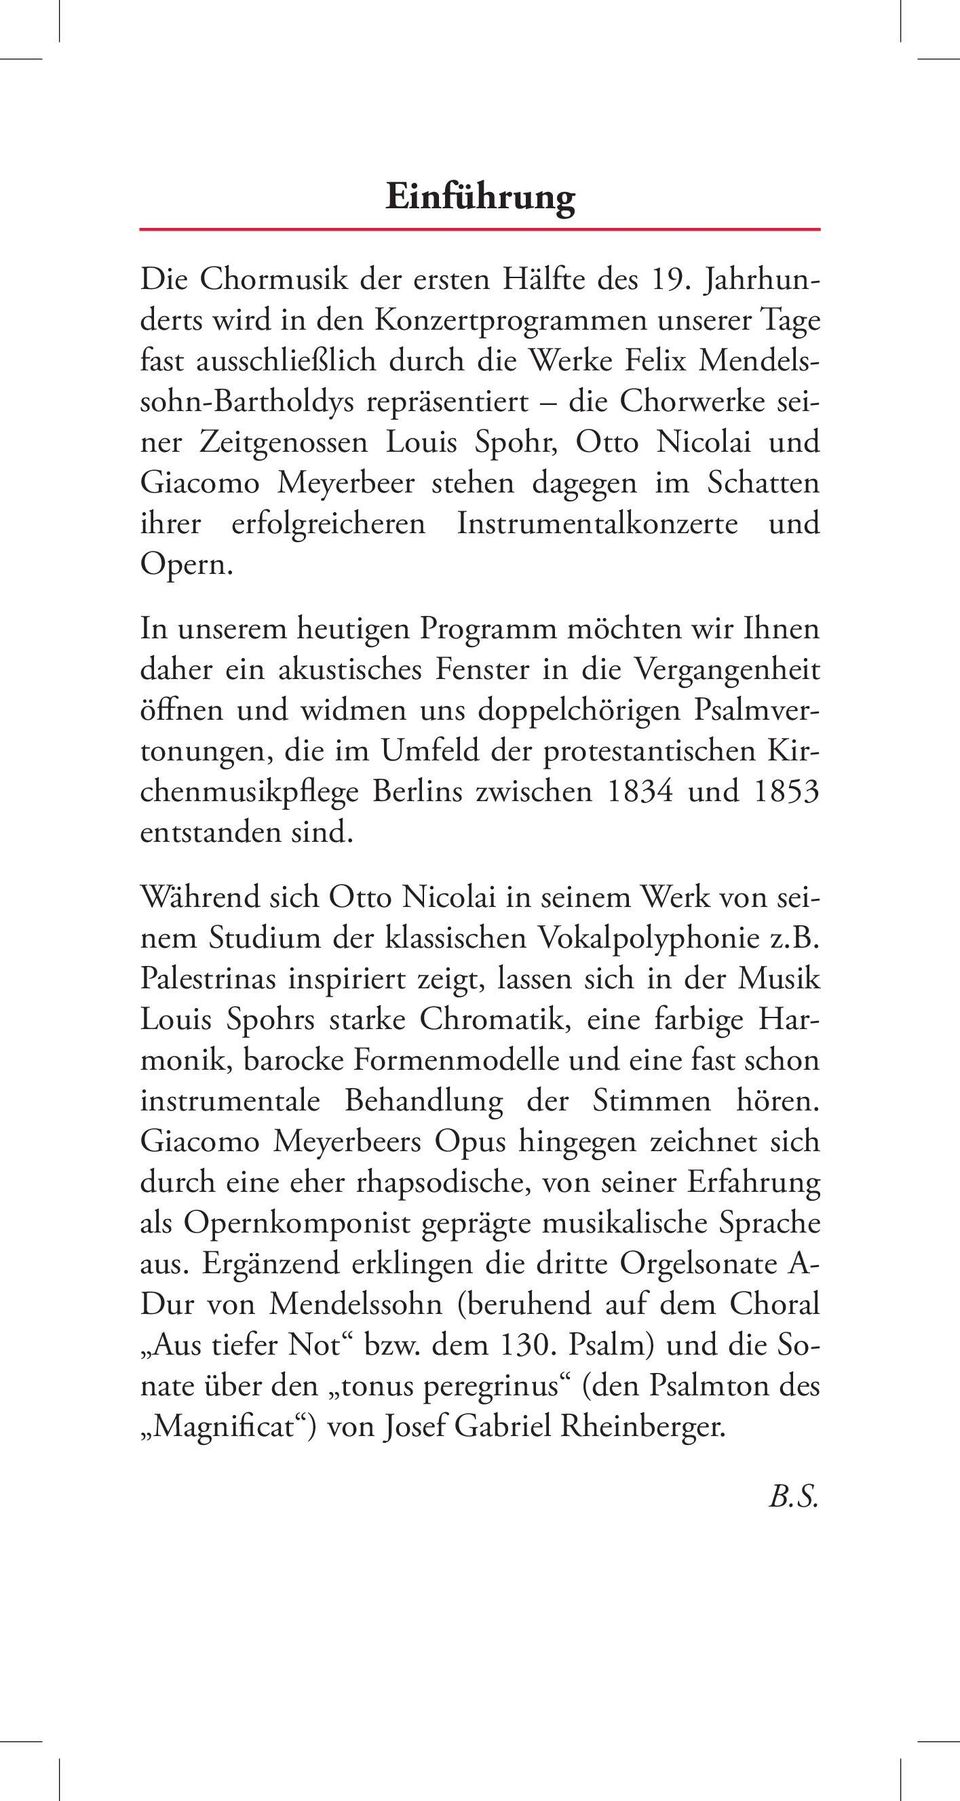 Giacomo Meyerbeer stehen dagegen im Schatten ihrer erfolgreicheren Instrumentalkonzerte und Opern.